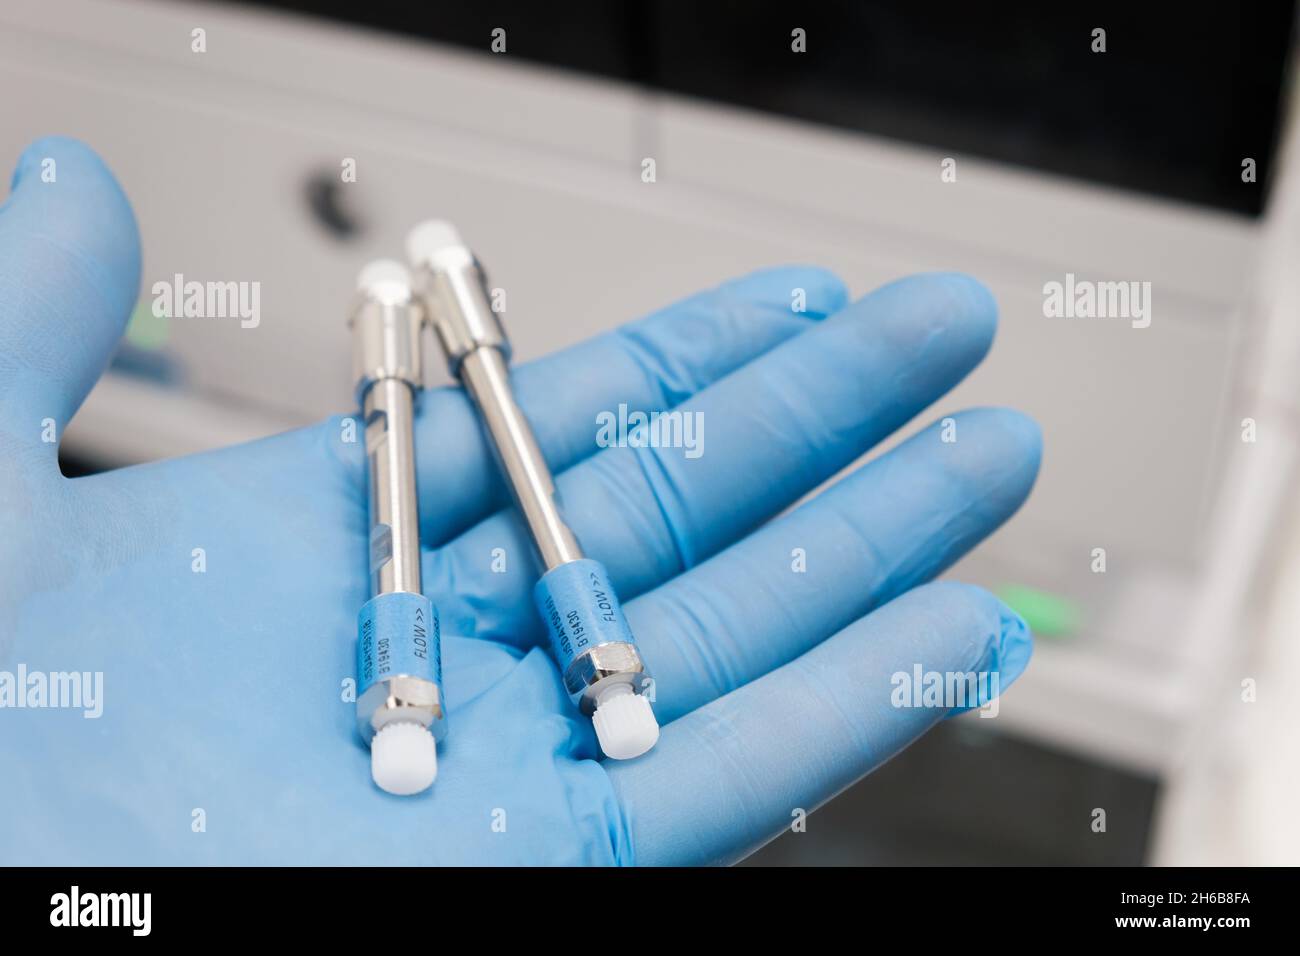 Kleine HPLC-Säulen mit 50 mm Durchmesser zur Trennung von Verbindungen im Labor Hand in Gummihandschuh. Schnelle Hochleistungs-Flüssigchromatographie-Analyse im chemischen und mikrobiologischen Labor. Klinische, toxikologische und forensische Analysen. Stockfoto